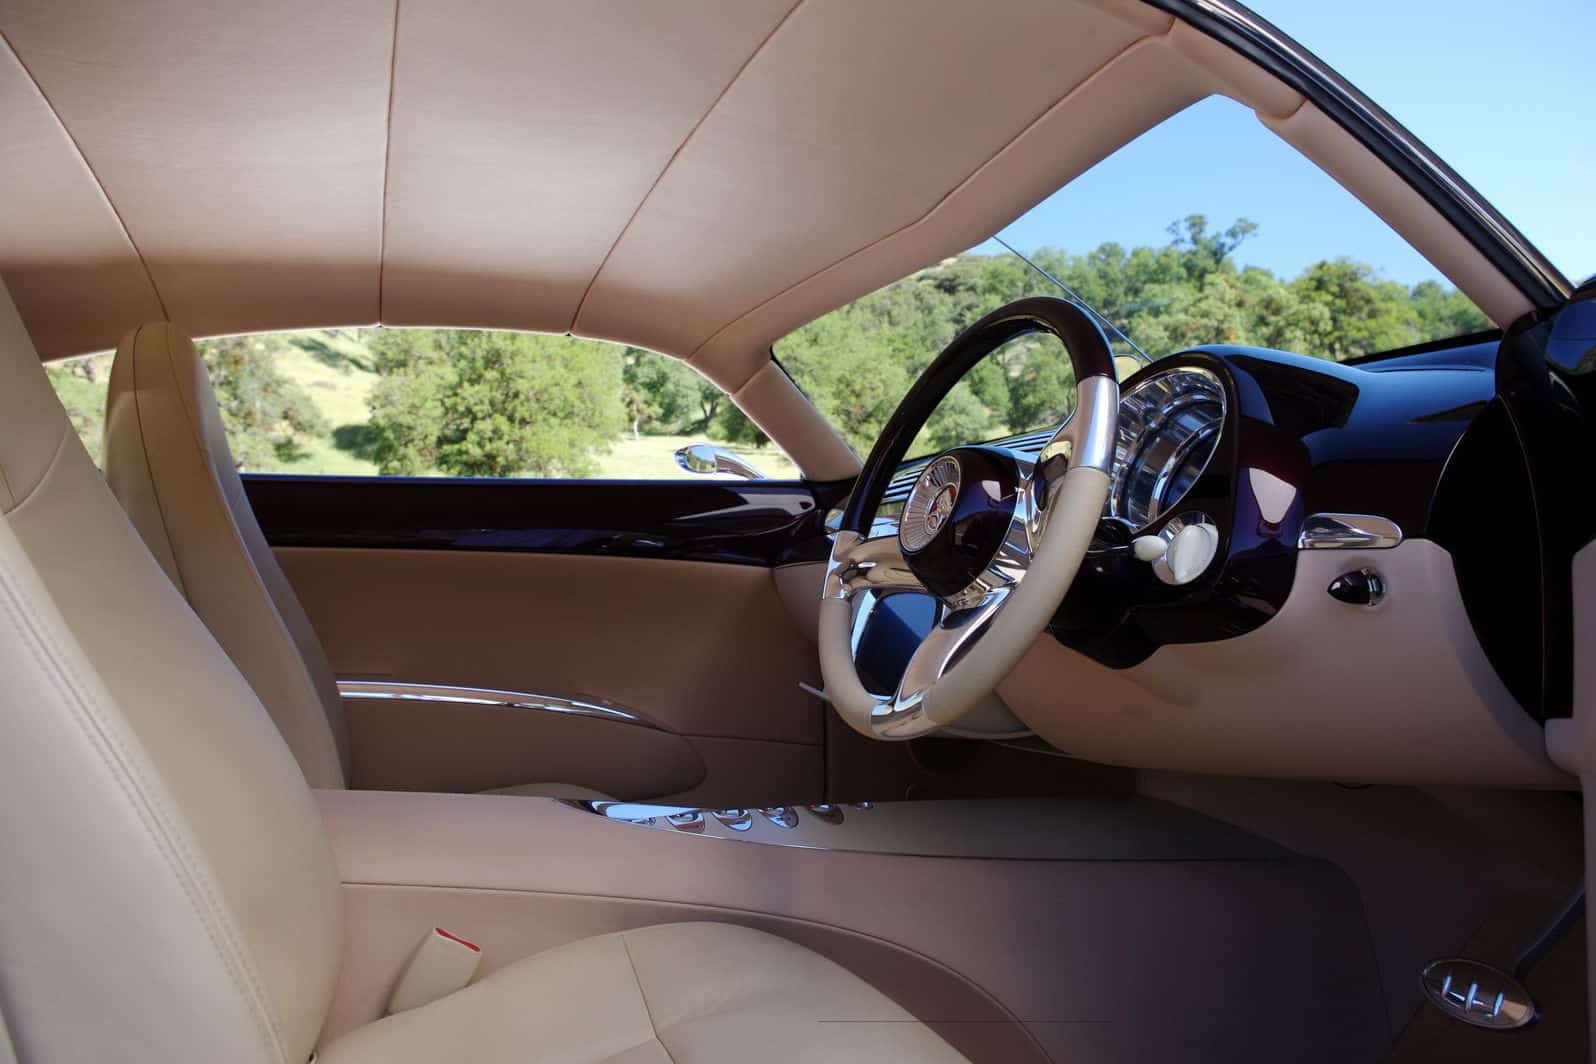 Holden-Efijy-Concept-Car-Interior